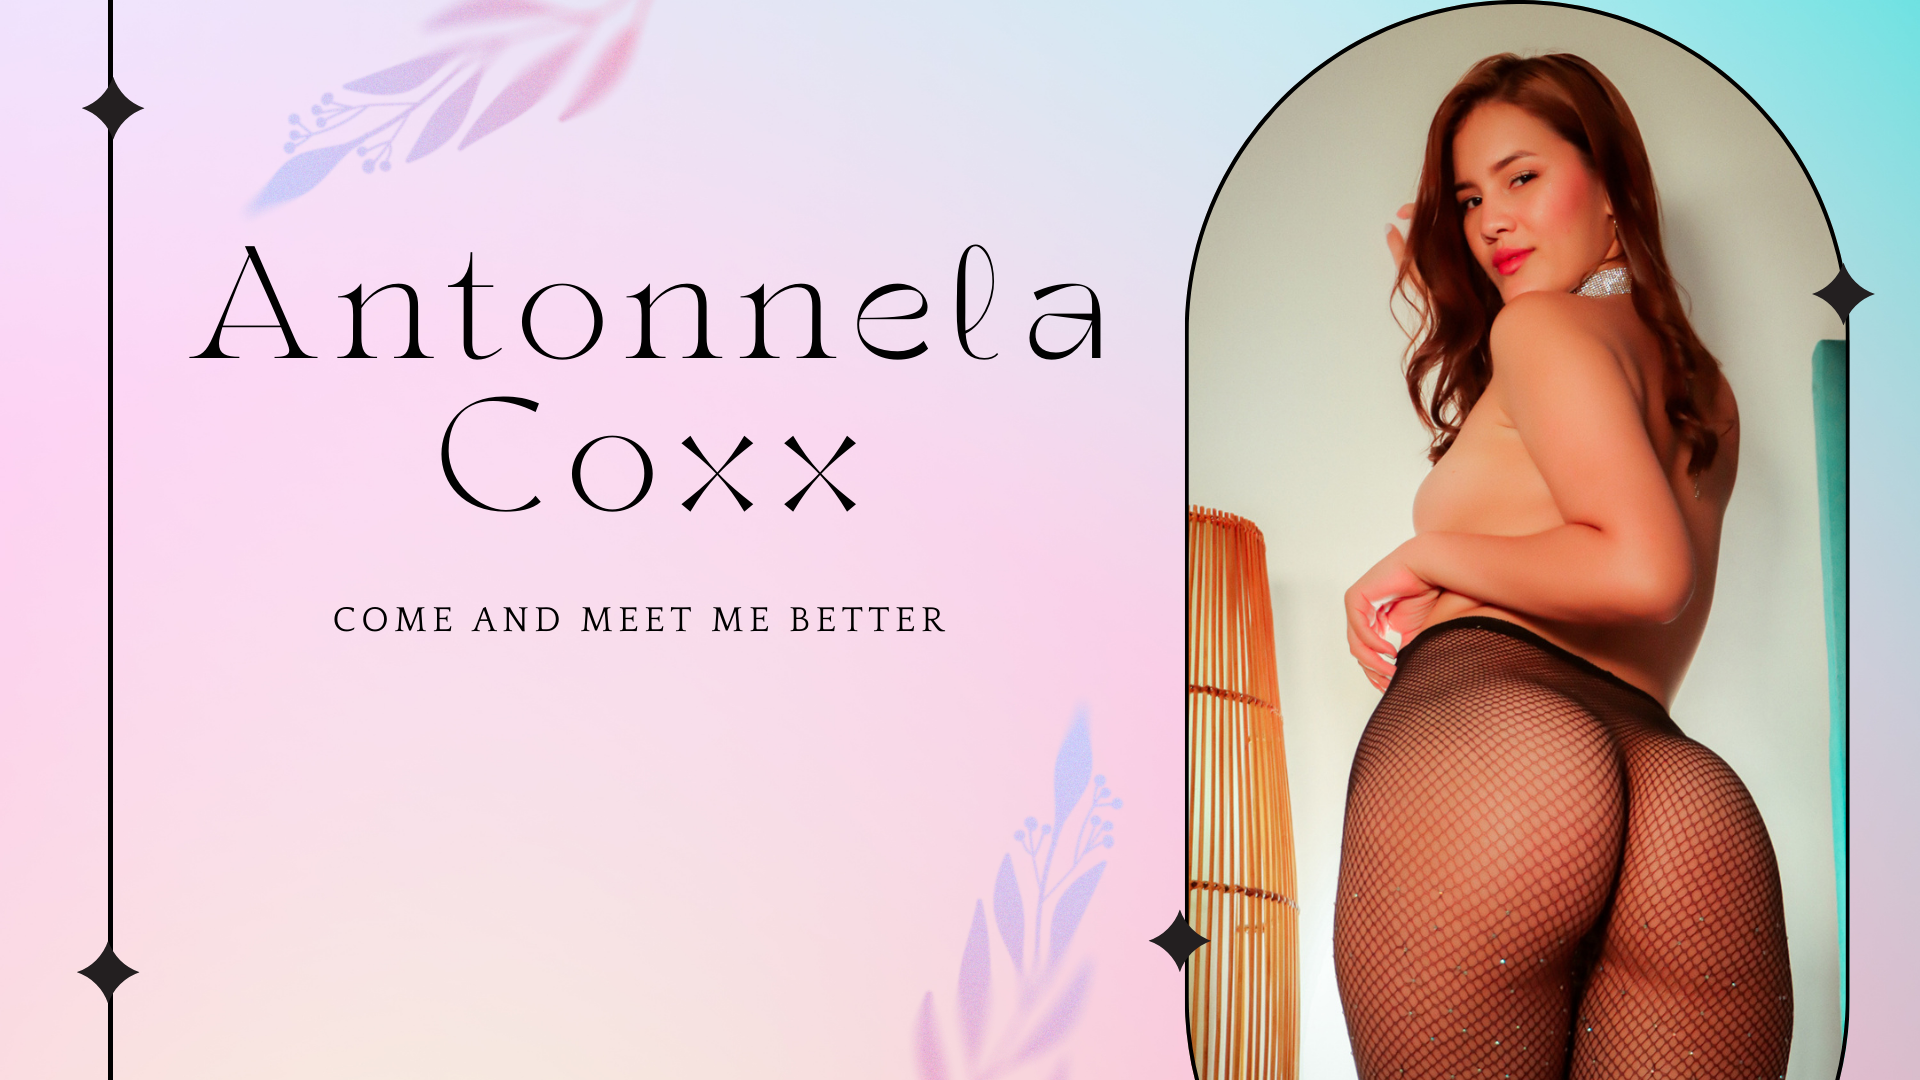 AntonnelaCoxx perfil image: 1